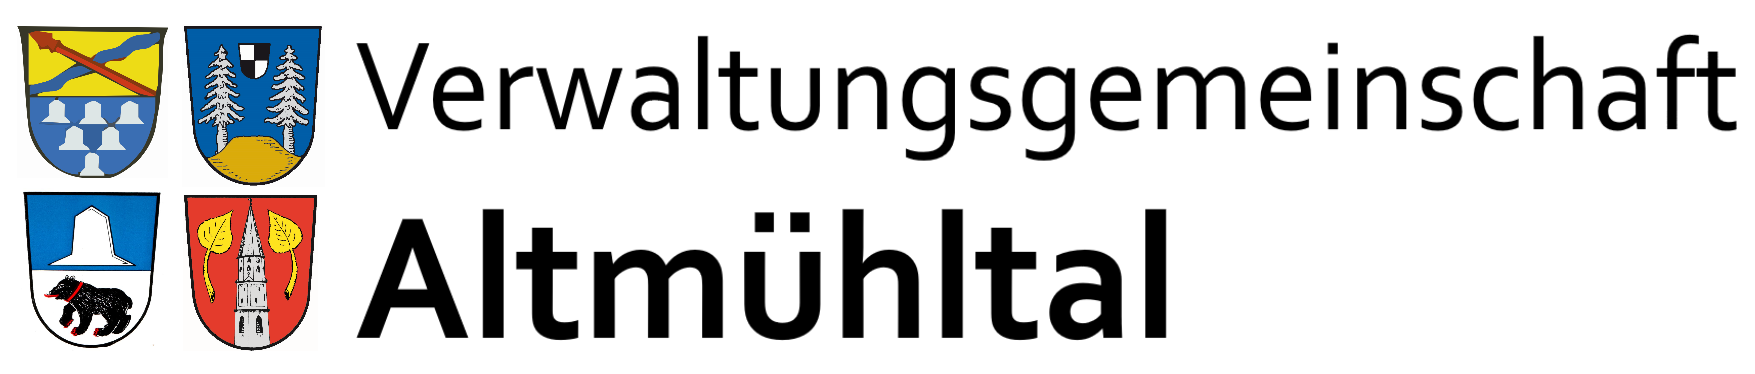 Schriftzug Verwaltungsgemeinschaft Altmühltal mit den vier Wappen der Mitgliedsgemeinden